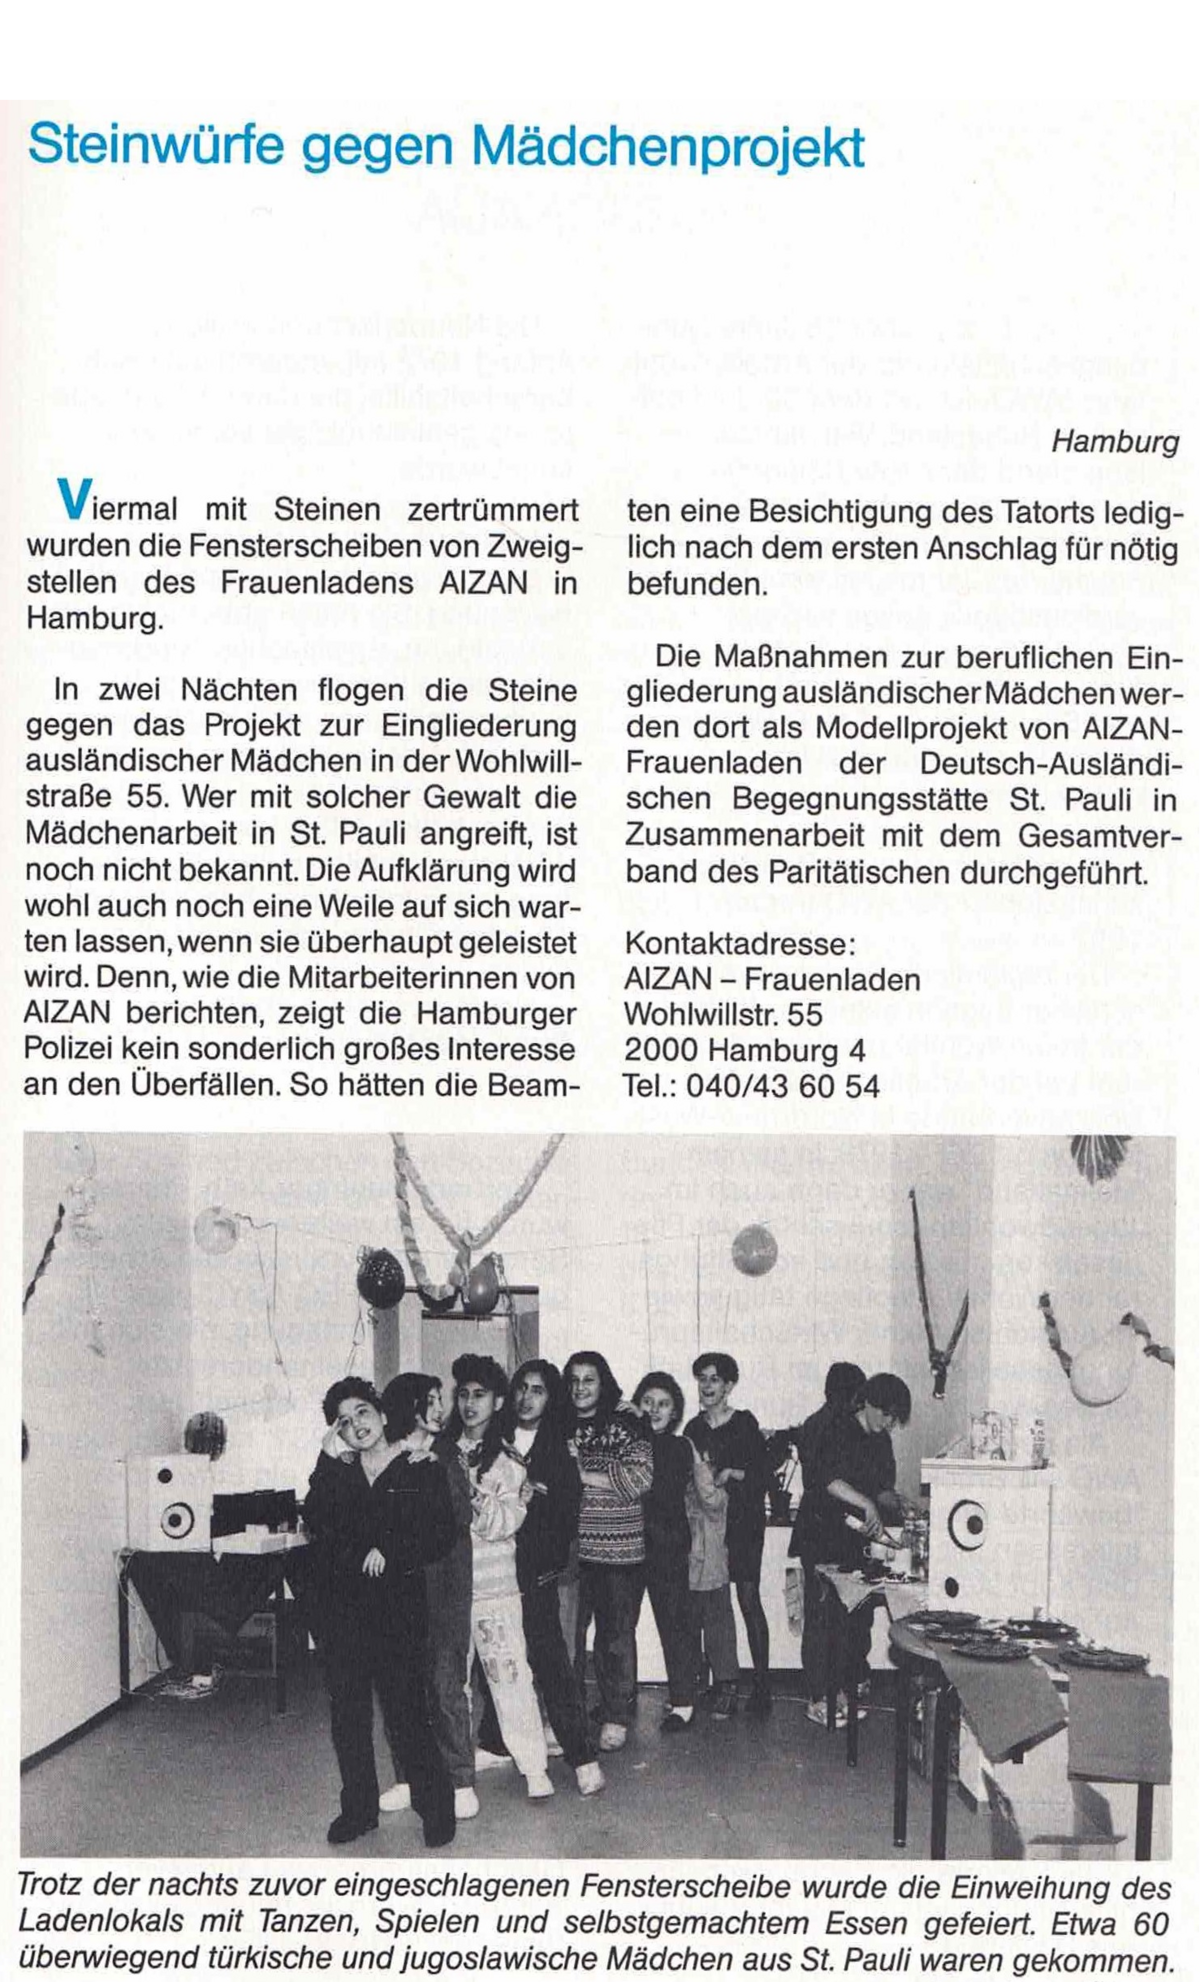 Beitrag aus dem Verbandsmagazin von 1992 mit der Überschrift "Steinwürfe gegen Mädchenprojekt" und einem Foto der Mädchen, die zur Eröffnung des Frauenladens AIZAN erschienen sind.